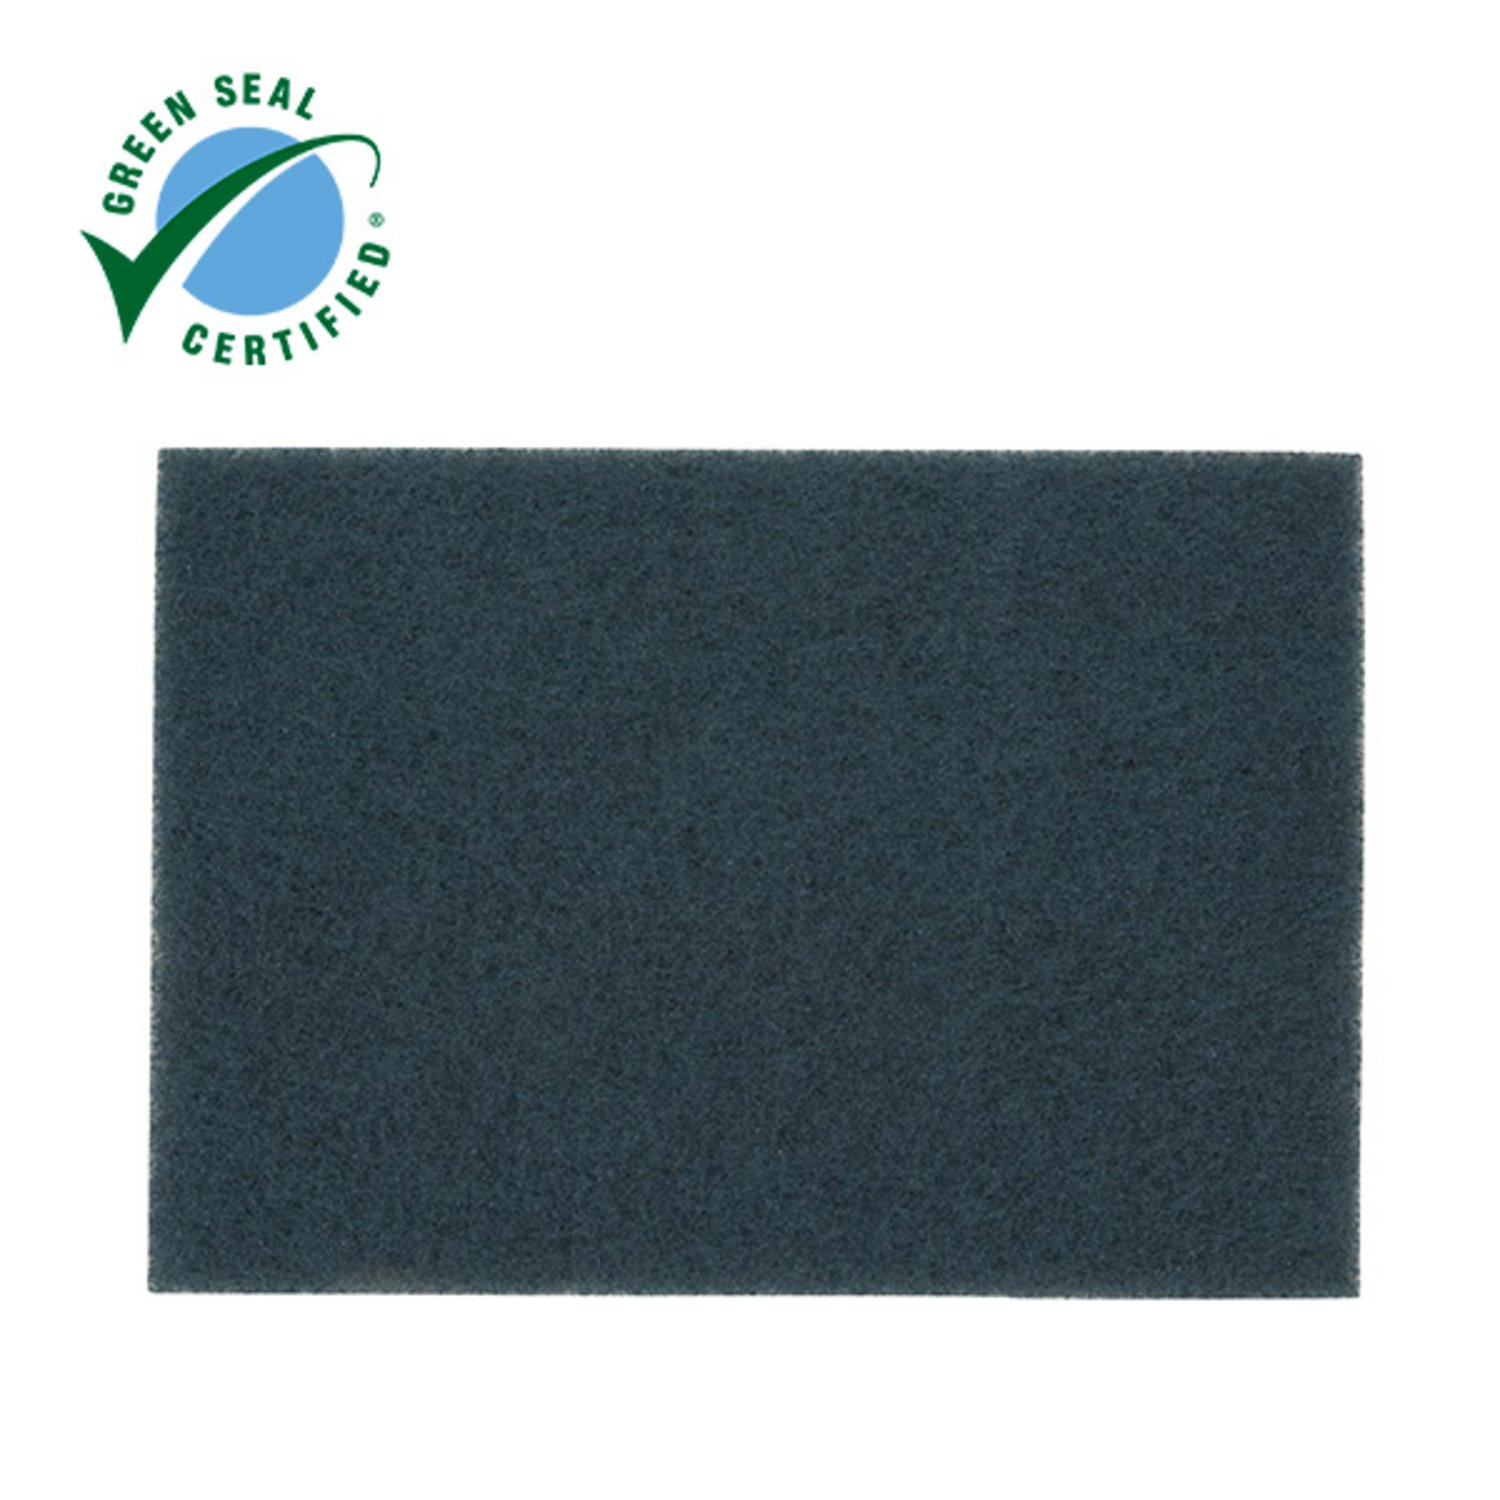 7000126869 - Scotch-Brite Blue Cleaner Pad 5300, Blue, 508 mm x 356 mm, 20 in x 14
in, 10 ea/Case